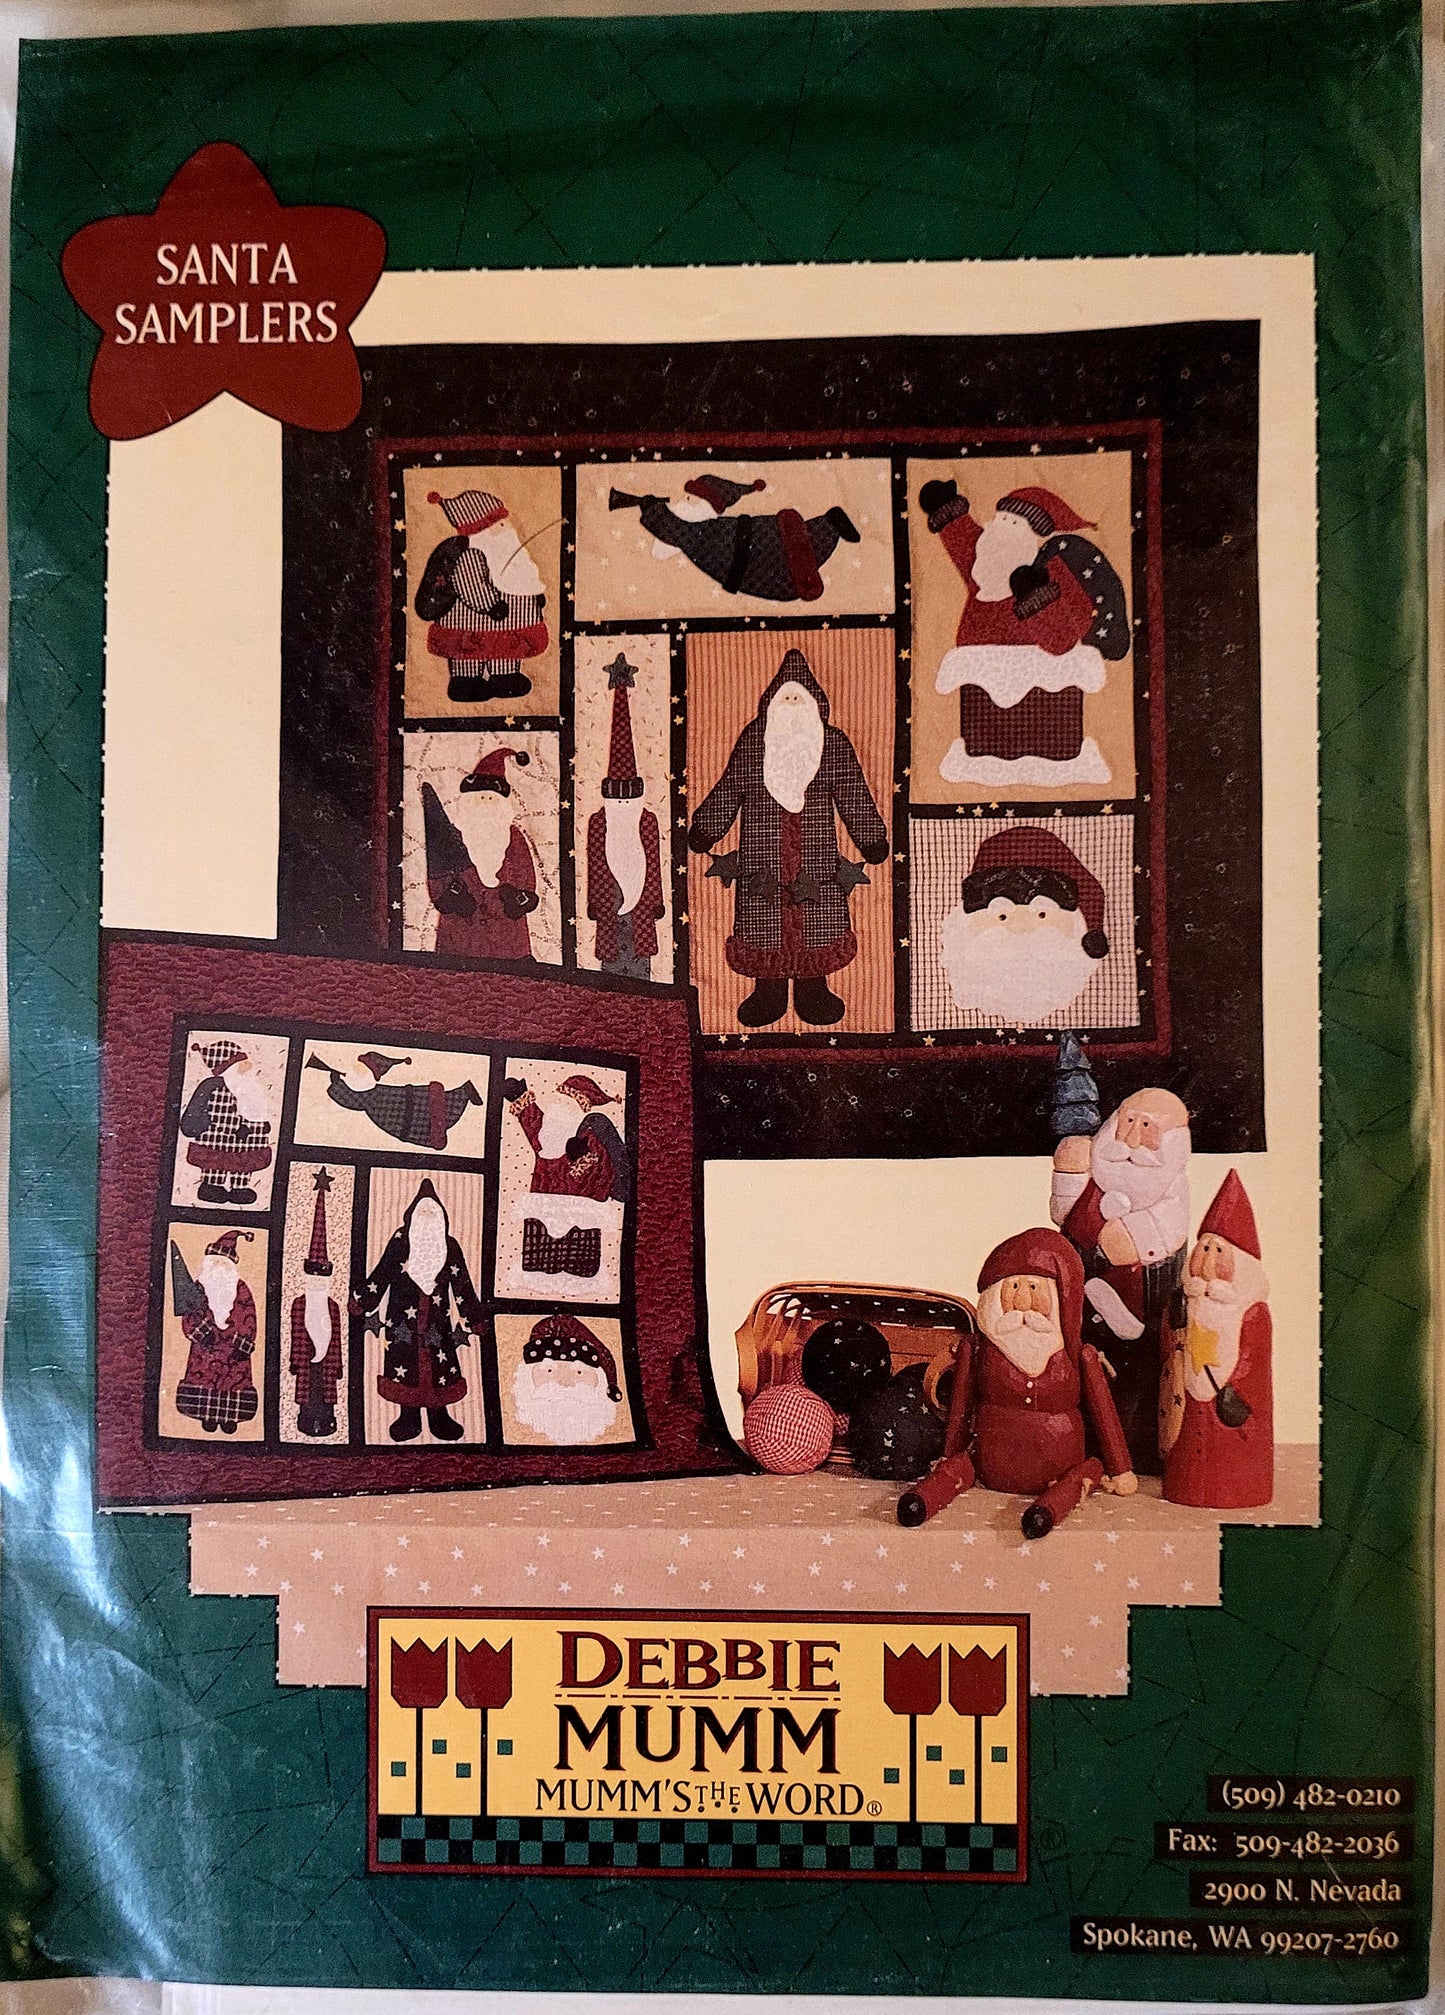 'Santa Samplers' by Mumm 31" x26" & 20"x17.5" *NEW